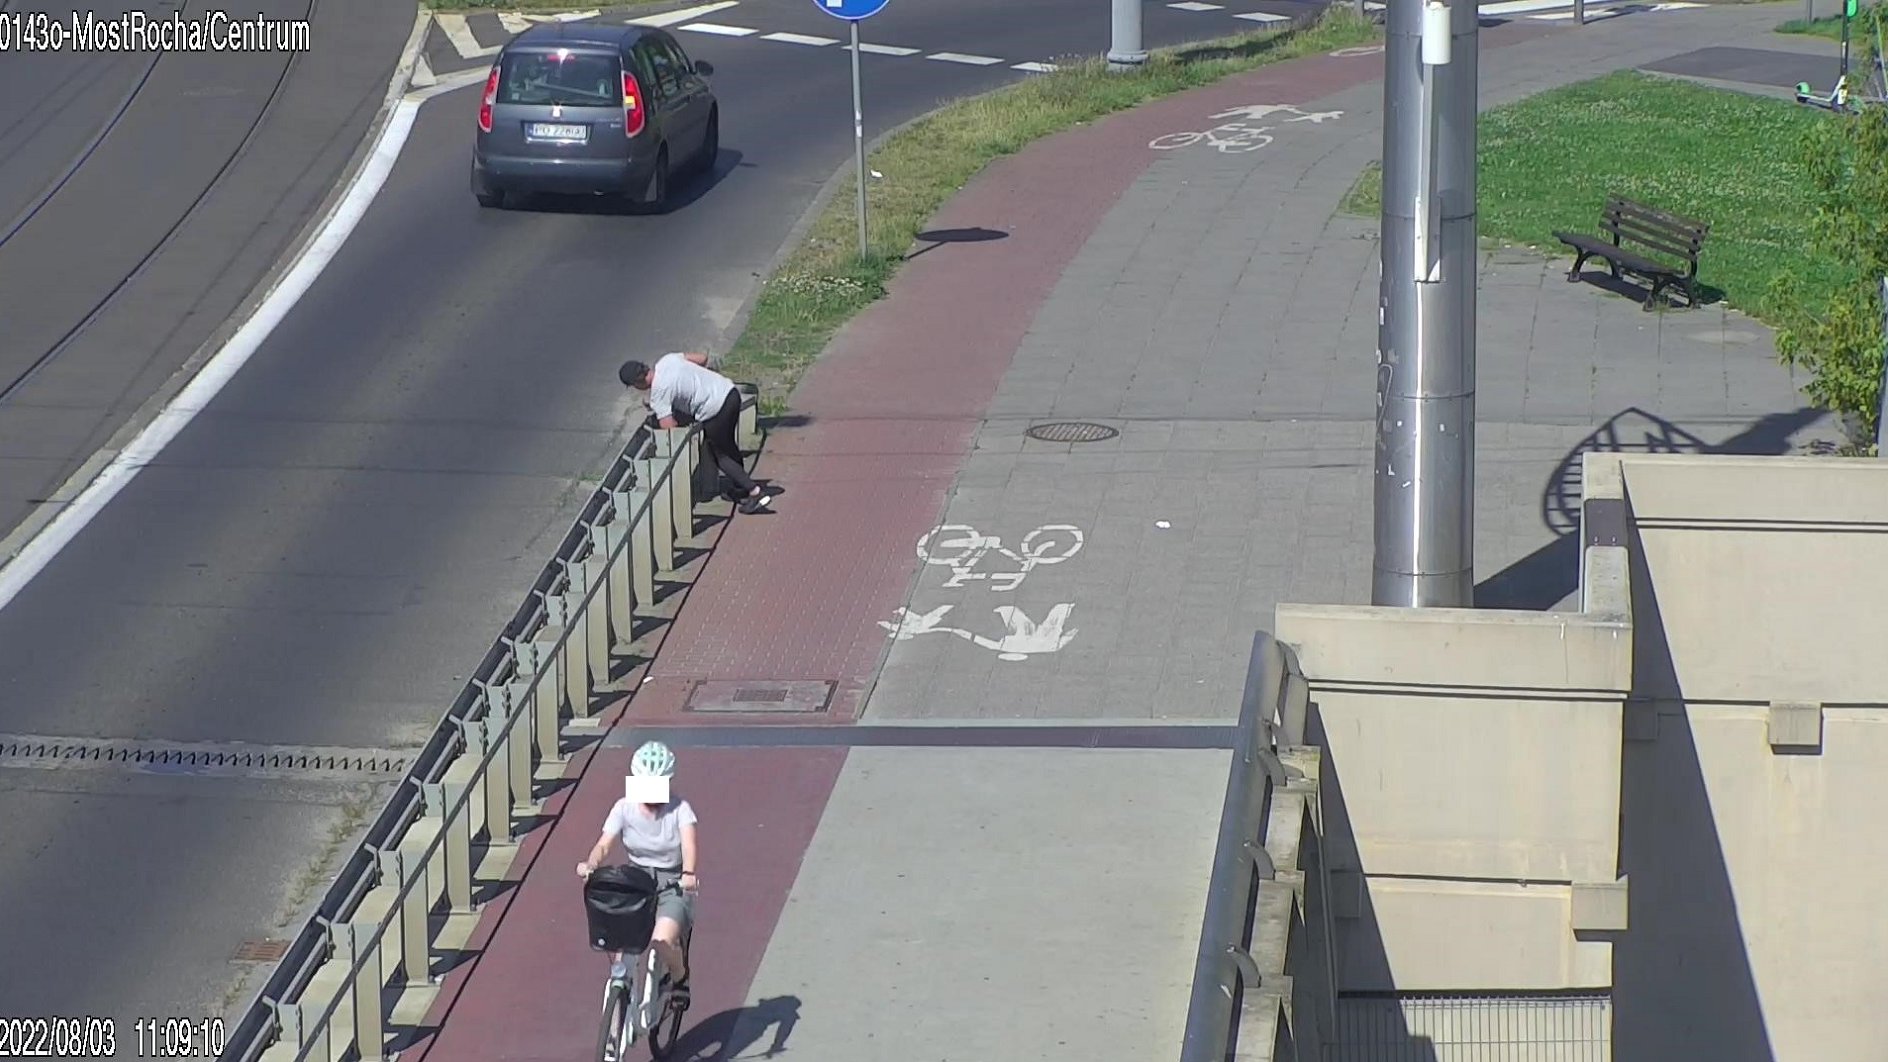 Zrzut ekranu z monitoringu miejskiego, przedstawia osobę pod wpływem alkoholu, która próuje przejść przez barierki odgradzające chodnik od jezdni.